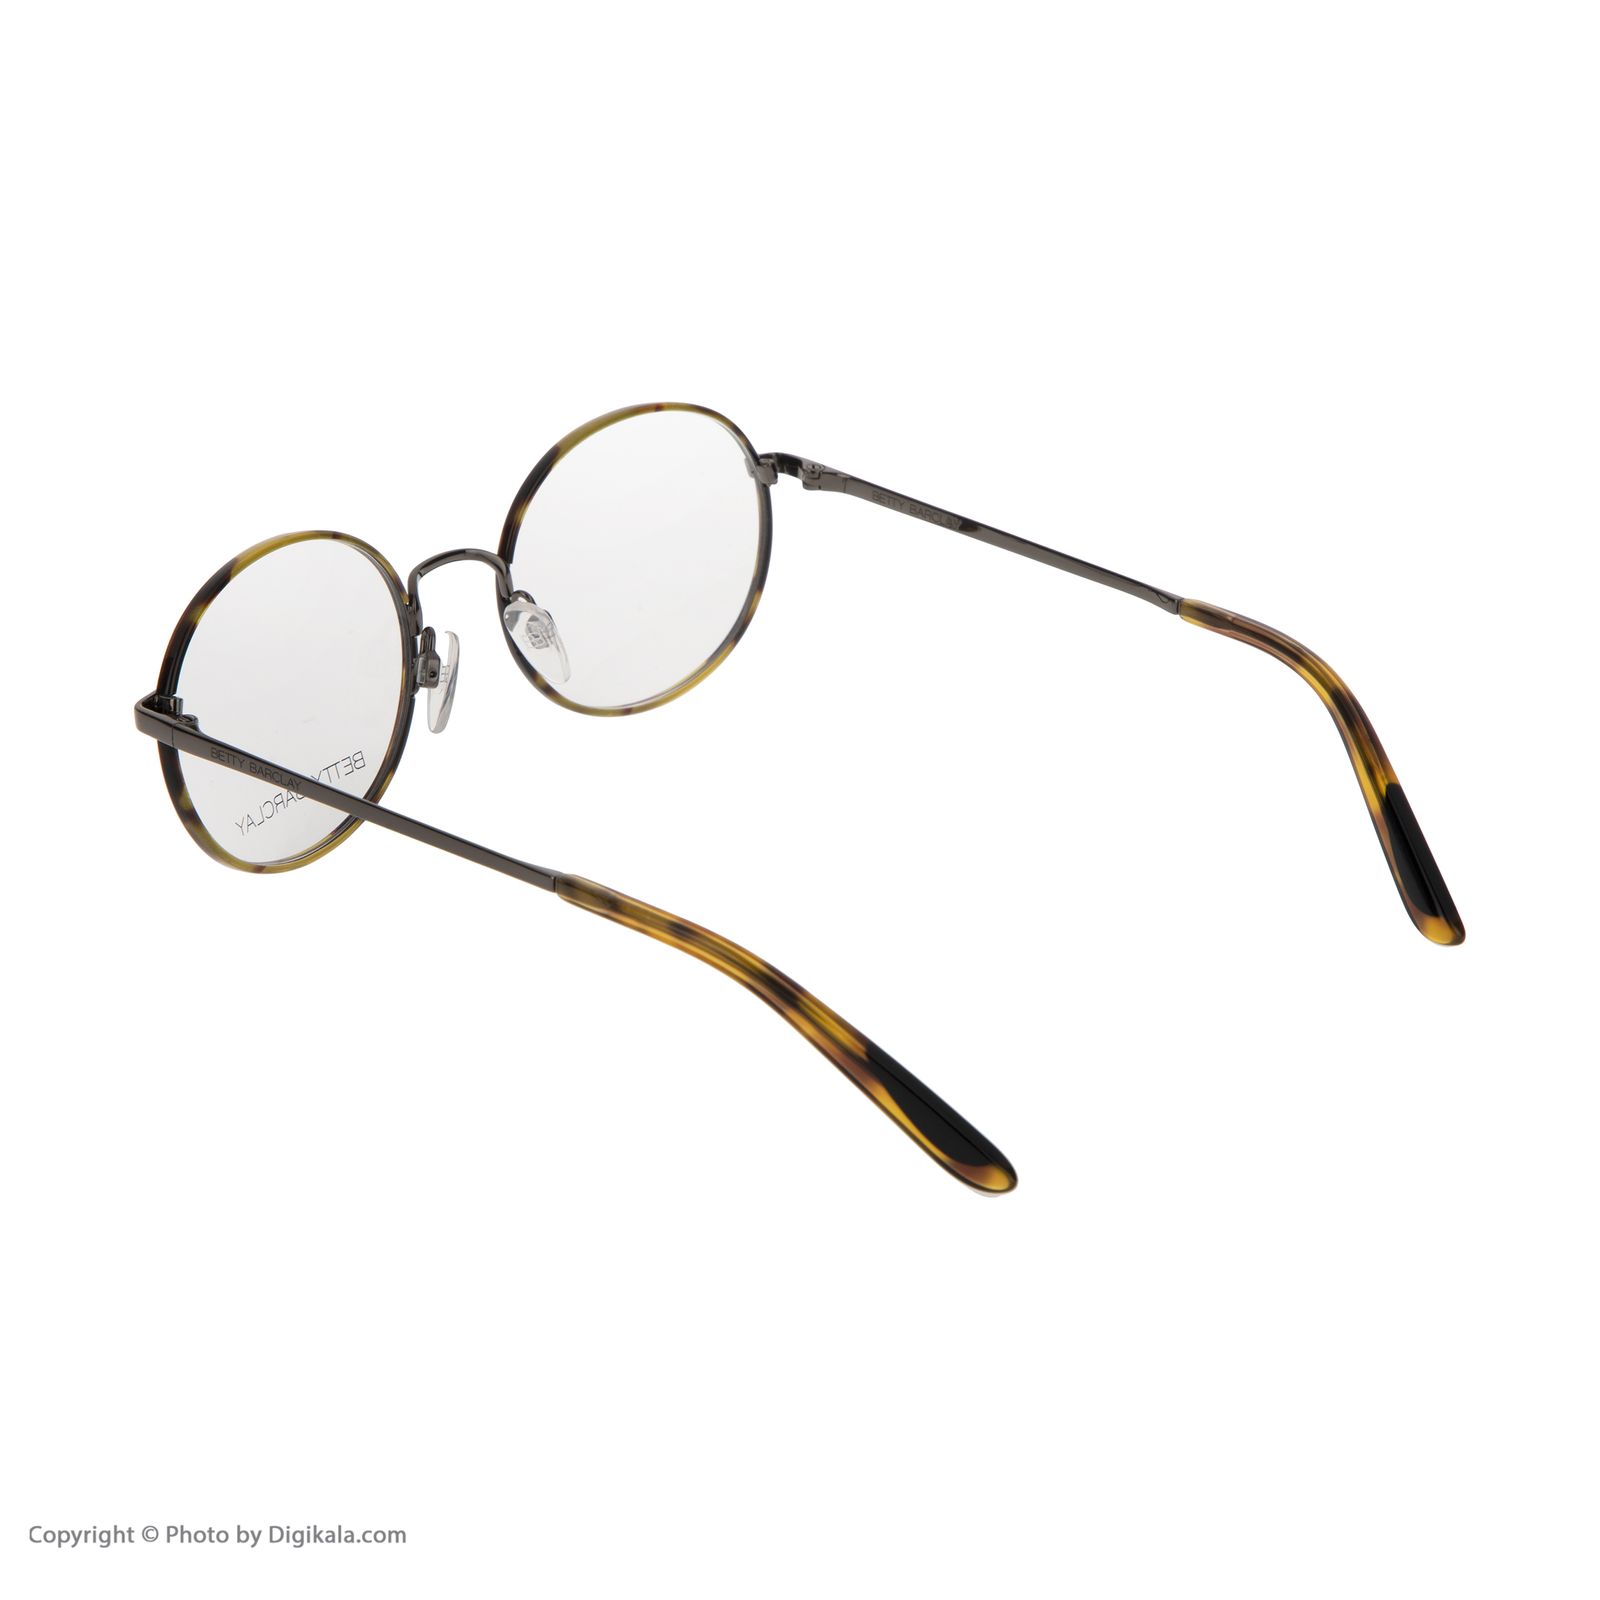 فریم عینک طبی زنانه بتی بارکلی مدل 51168-662 -  - 4